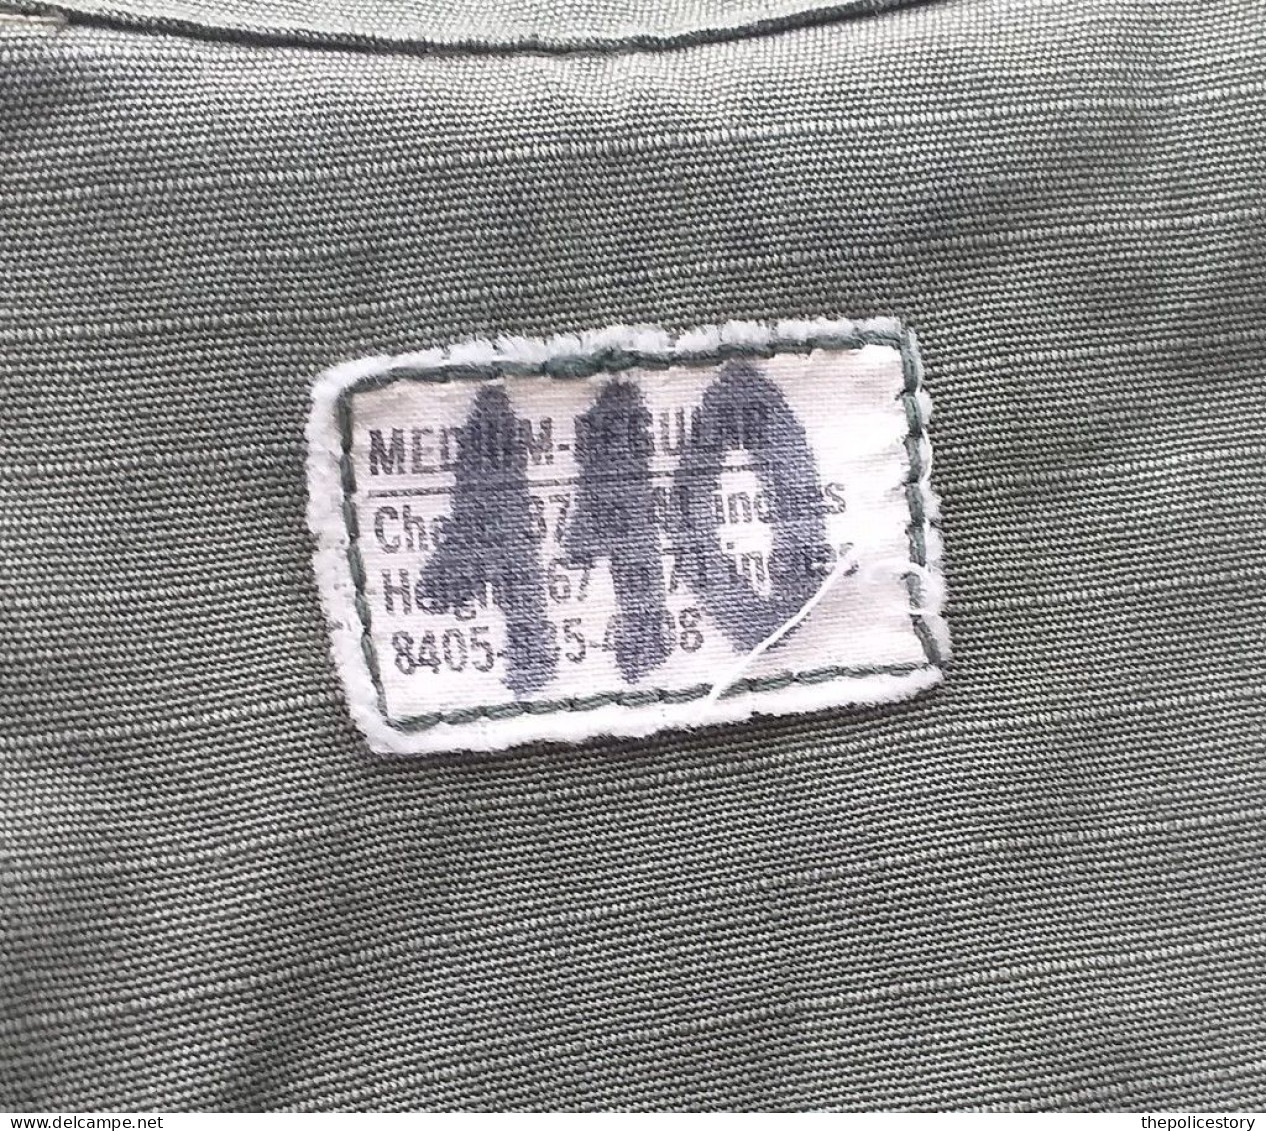 Coat Men's Cotton w/r rip stop Og-107 Vietnam 1968 originale etichettata